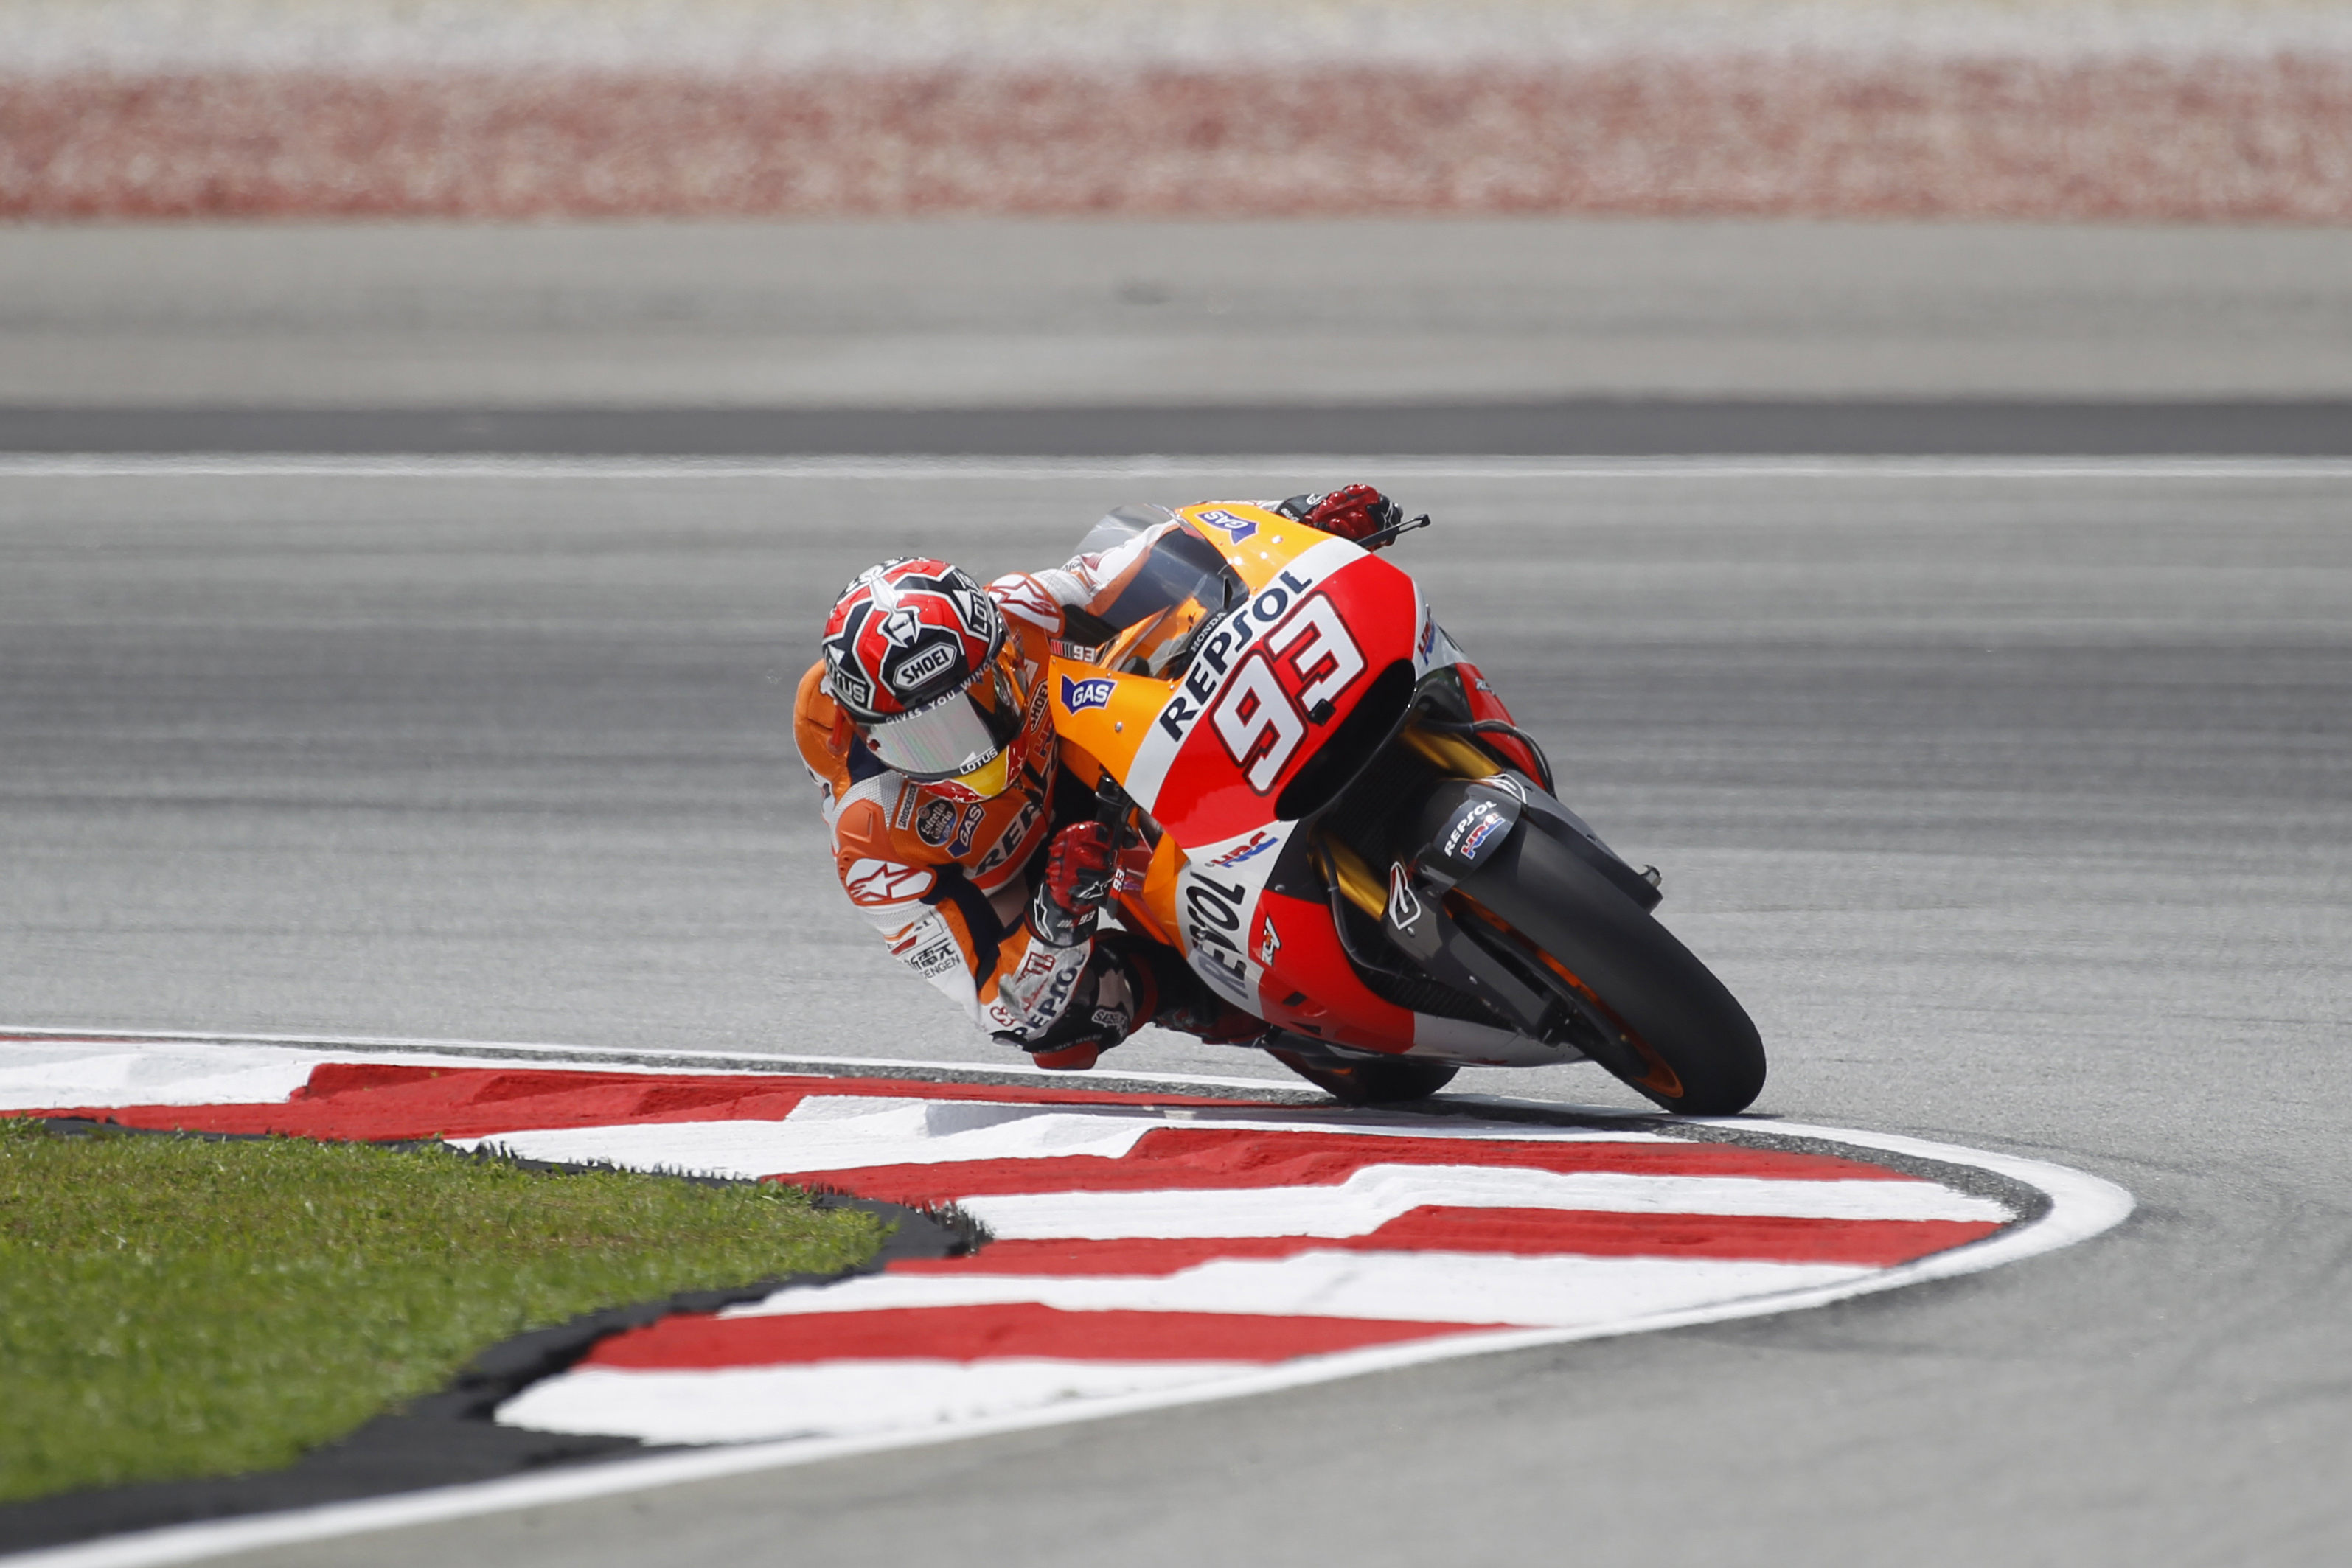 ΜοtoGP - Μαλαισία 2014: Pole position και νέο ρεκόρ για Marquez